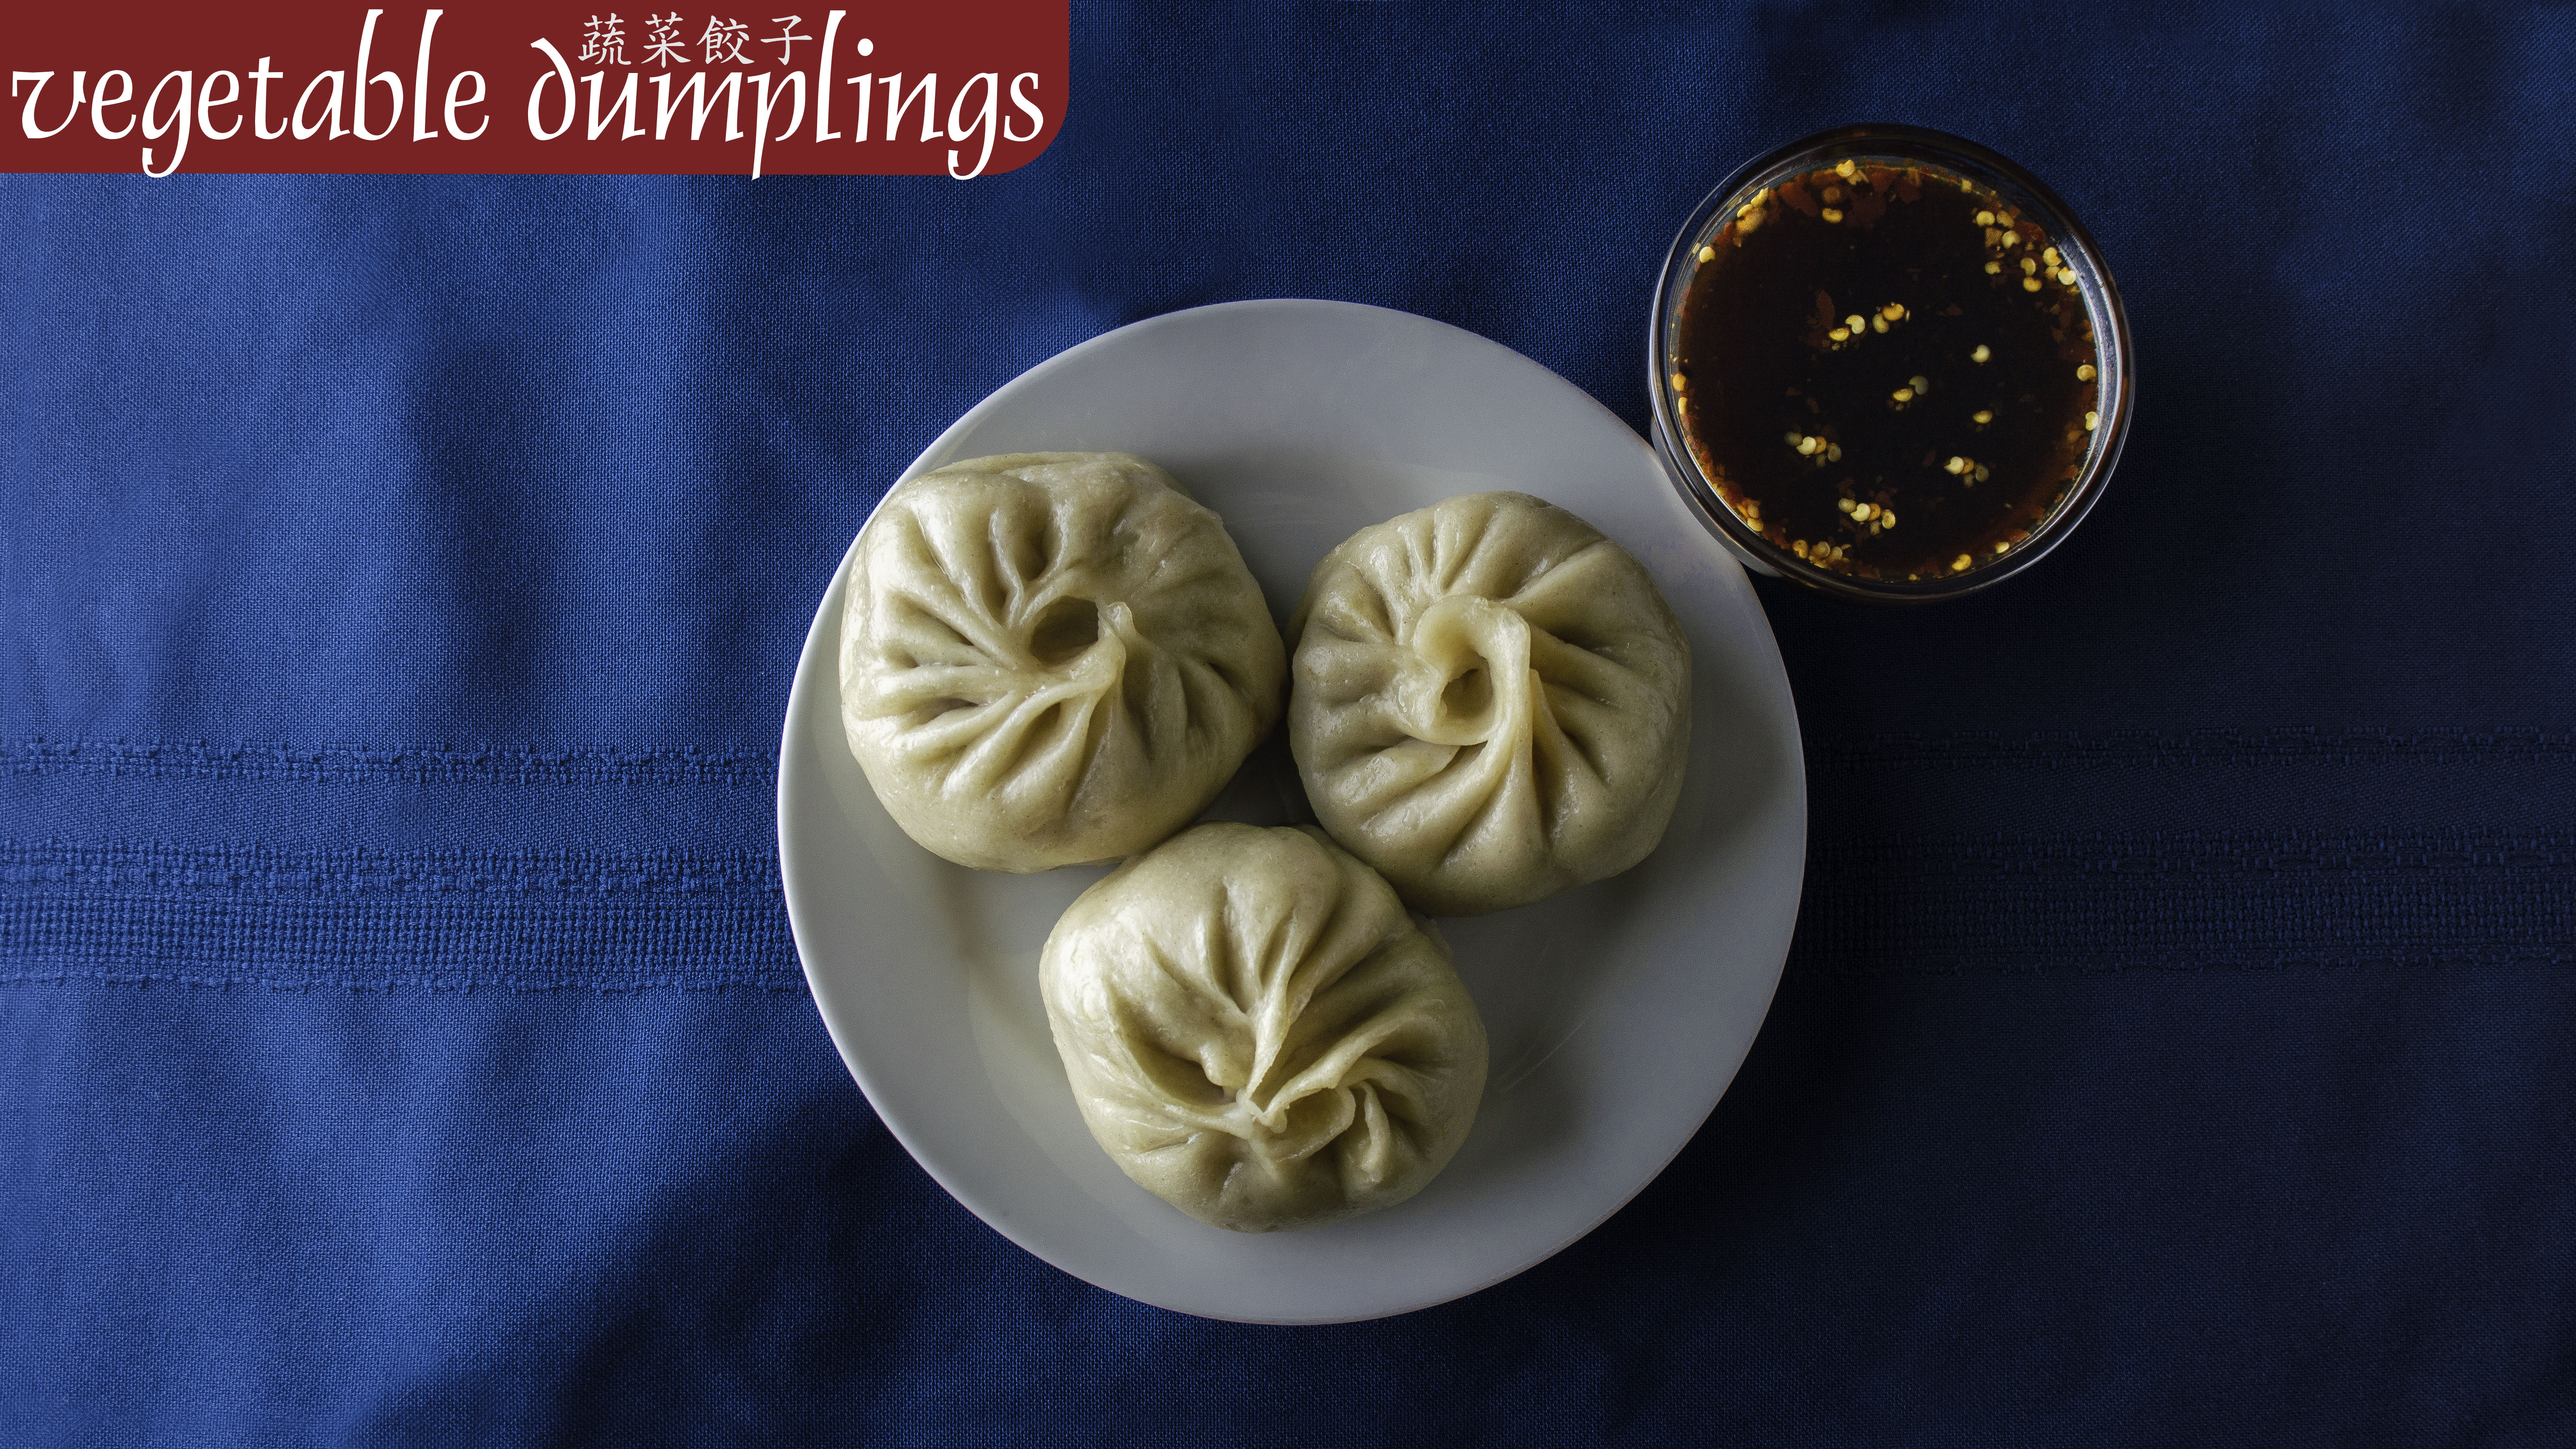 Holy Chow - Appetizers - Dumplings - Vegetable - Caption